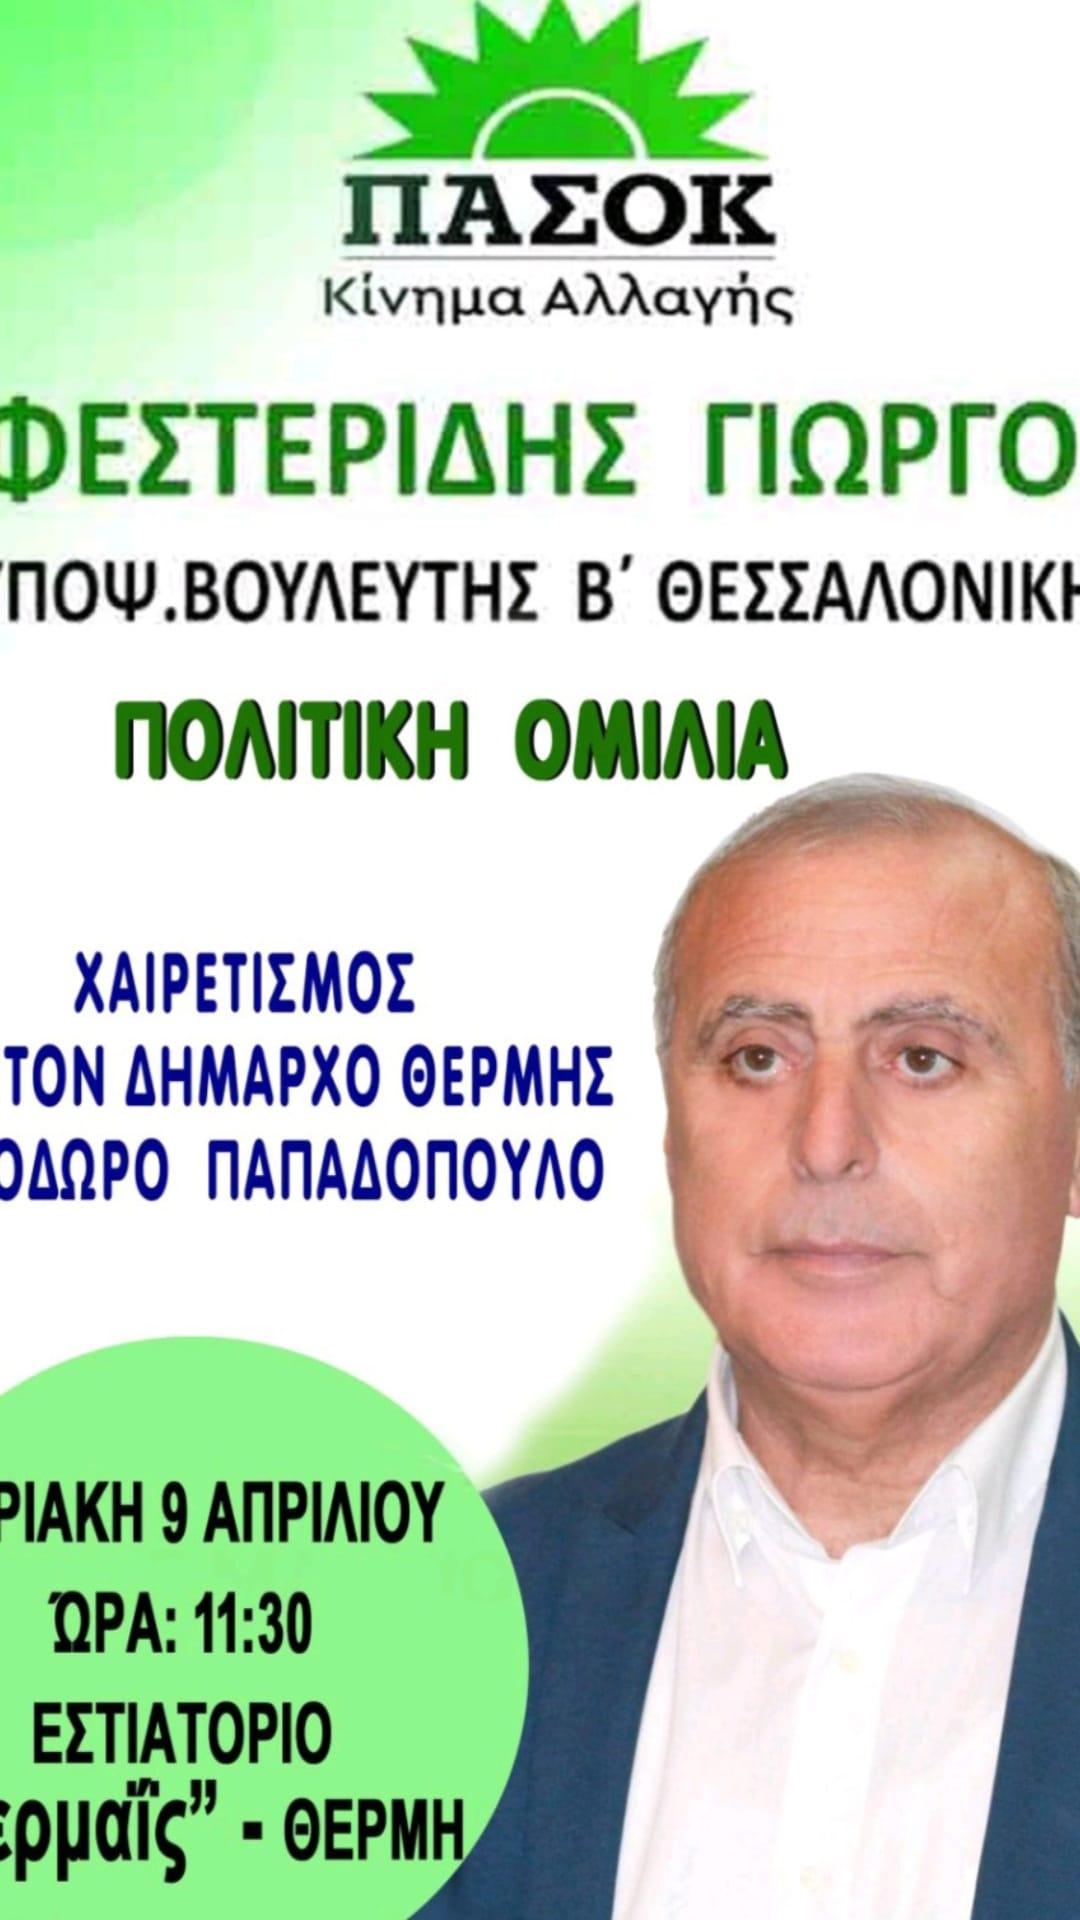 ΣΗΜΕΡΑ ΣΤΙΣ 11:30: Ο Γιώργος Φεστερίδης μιλά στη Θέρμη-Χαιρετίζει ο δήμαρχος Θόδωρος Παπαδόπουλος